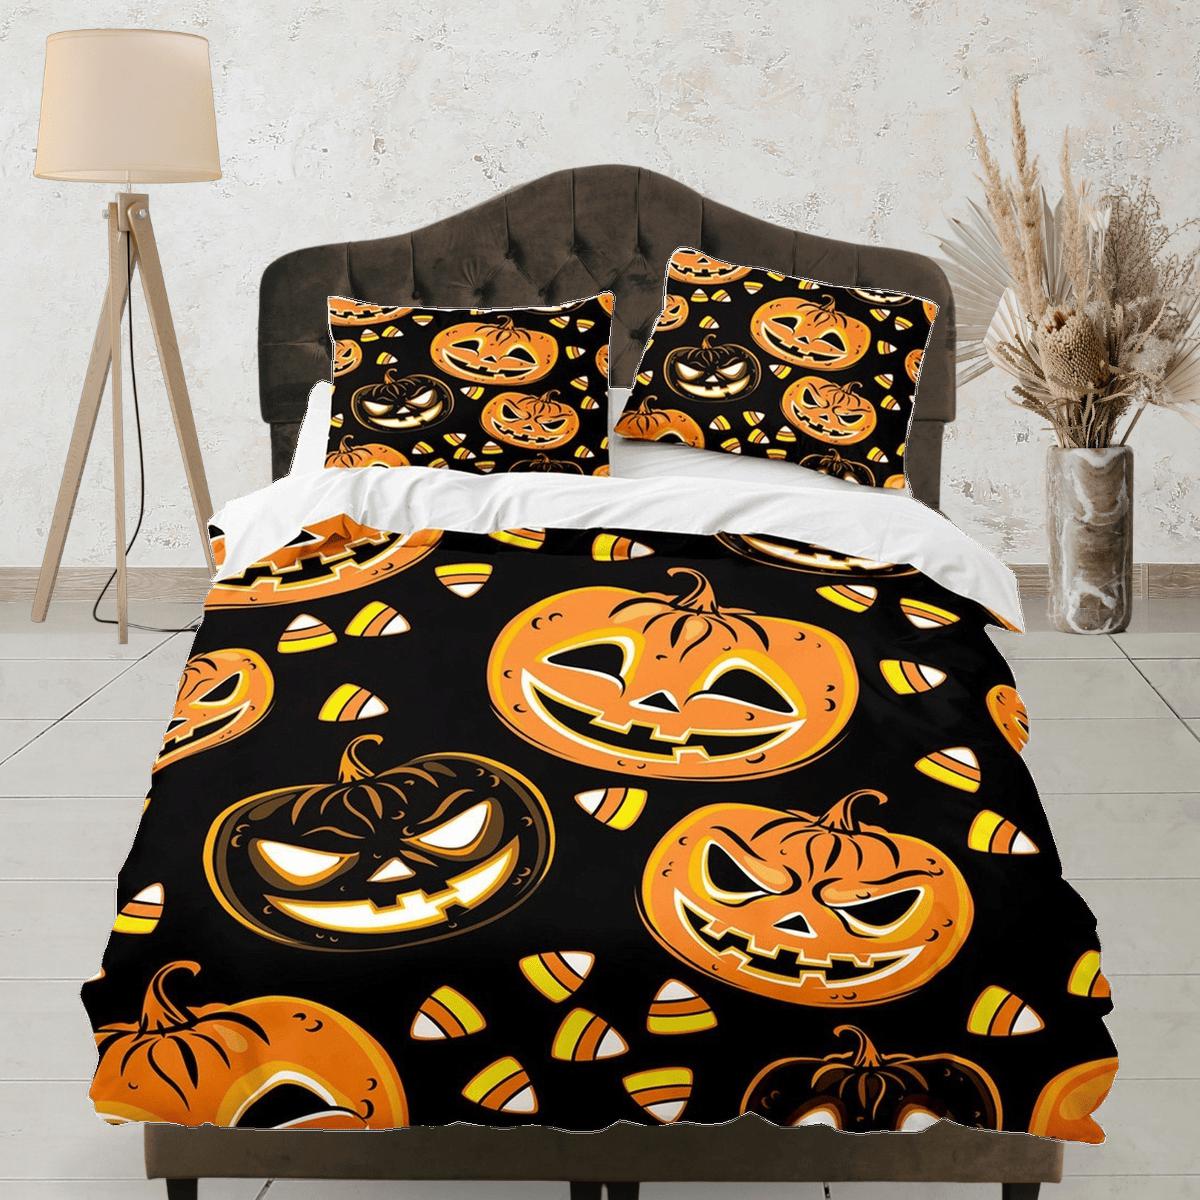 daintyduvet Halloween pumpkin bedding set full & pillowcase, black duvet cover dorm bedding, halloween decor, nursery toddler bedding, halloween gift